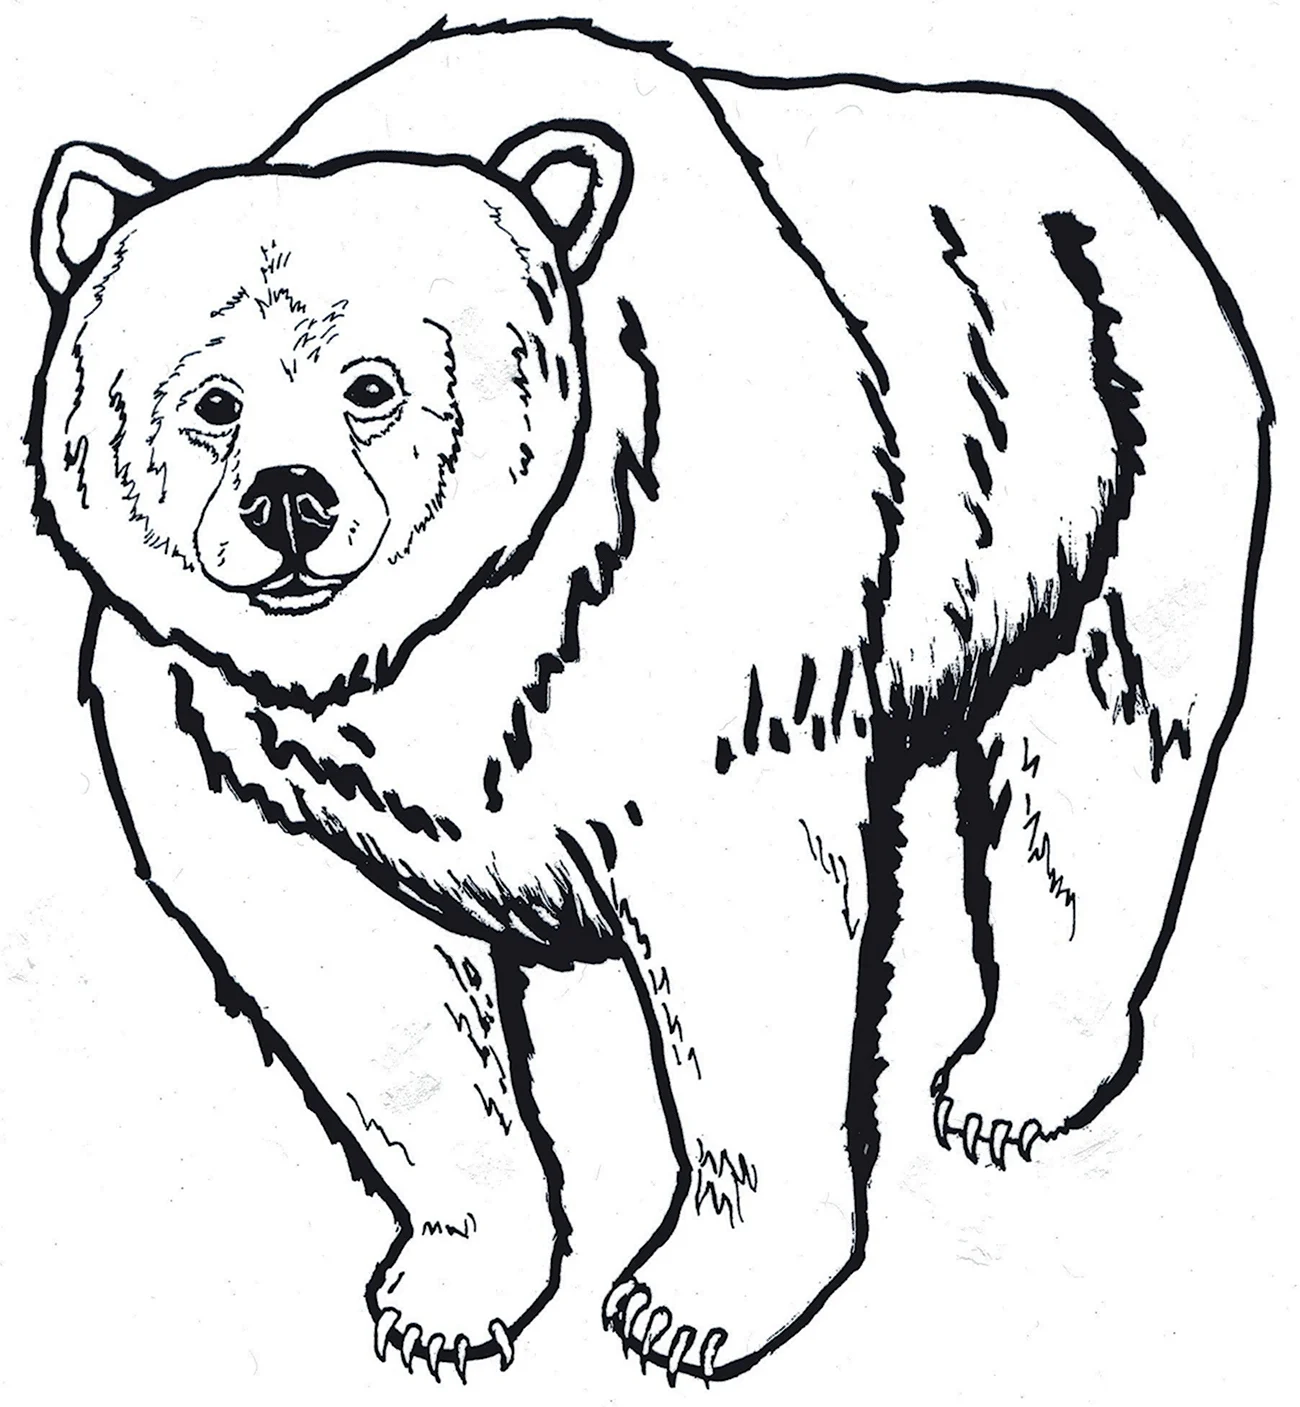 Очковый медведь раскраска. Для срисовки